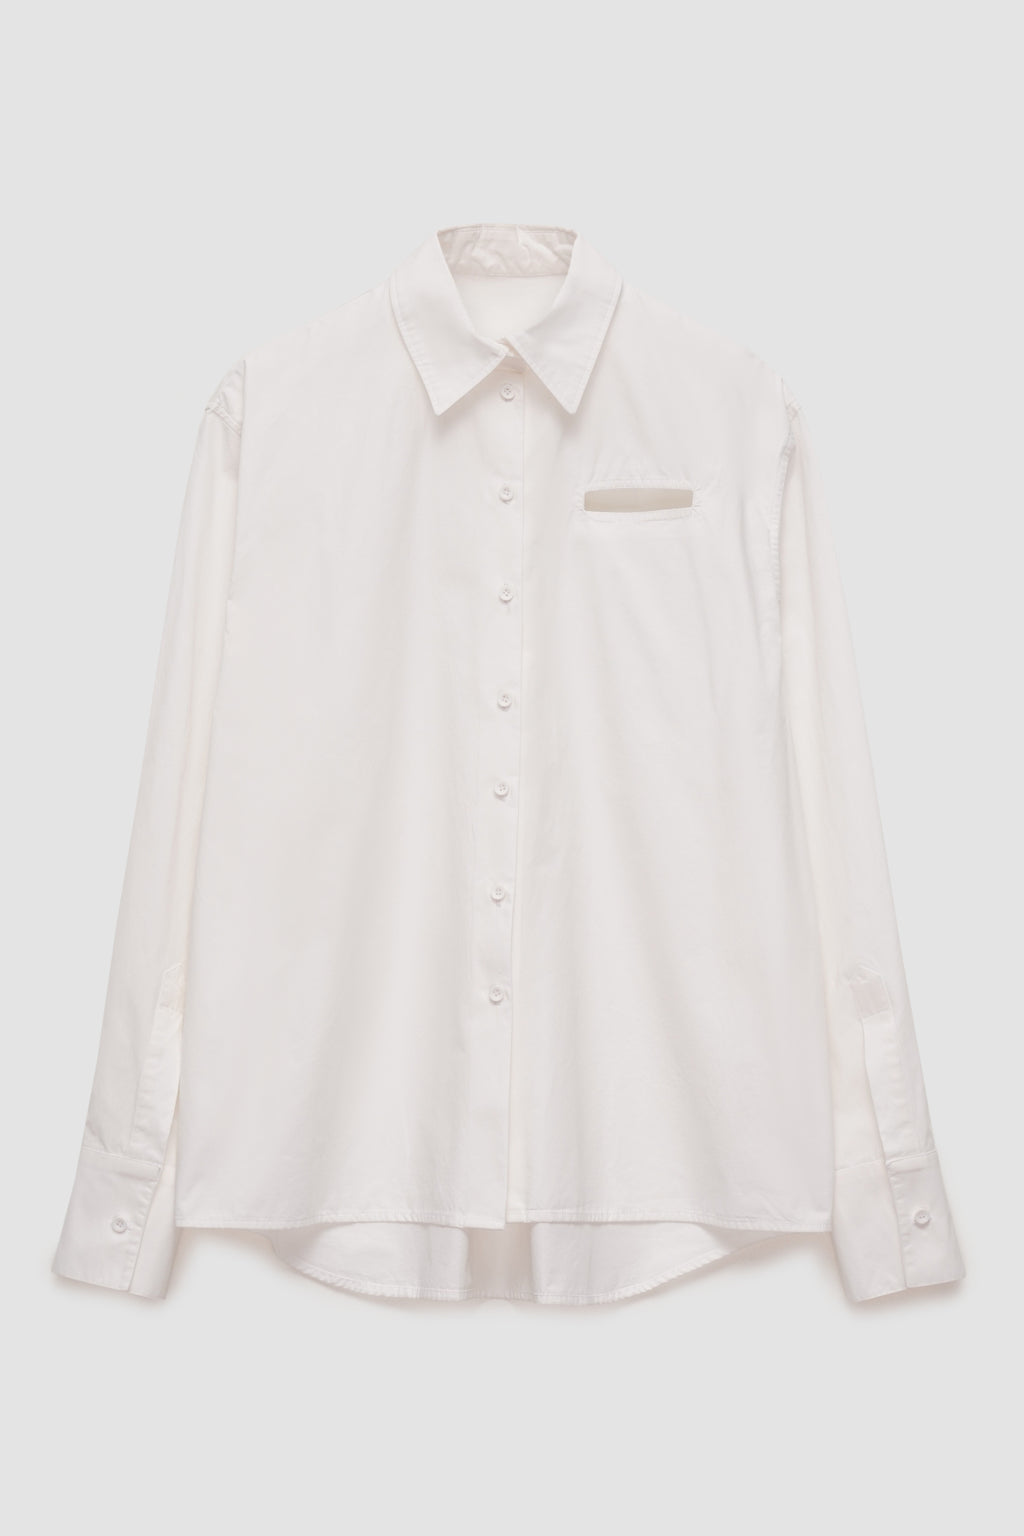 'Fake Pocket' Shirt in White